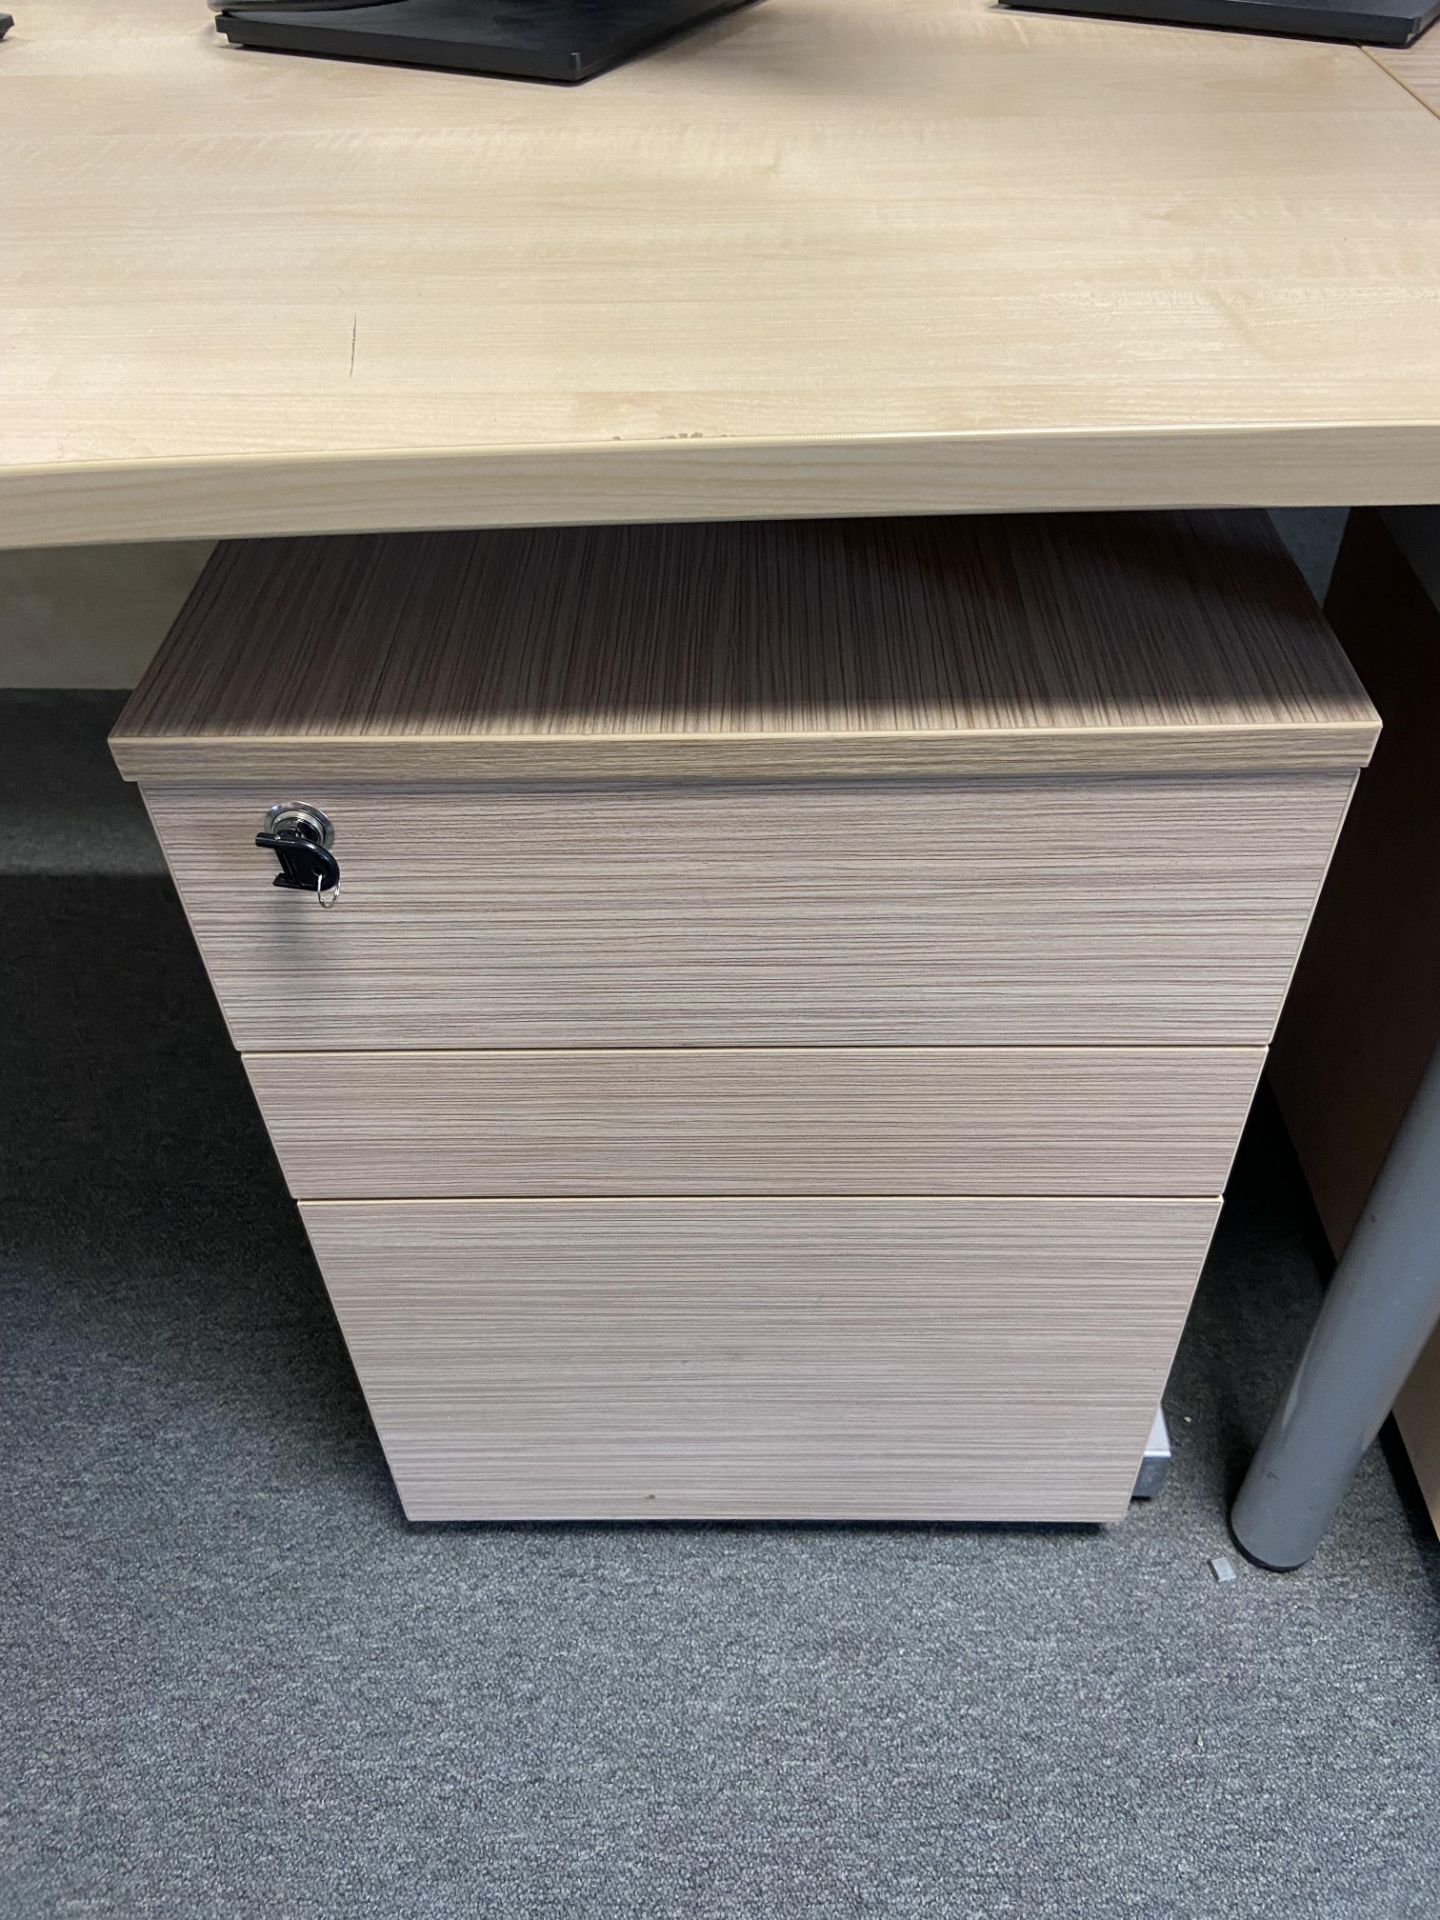 Lot comprisng: two rectangular desks, one wave desk & three 3 drawer mobile pedestals - Image 3 of 4